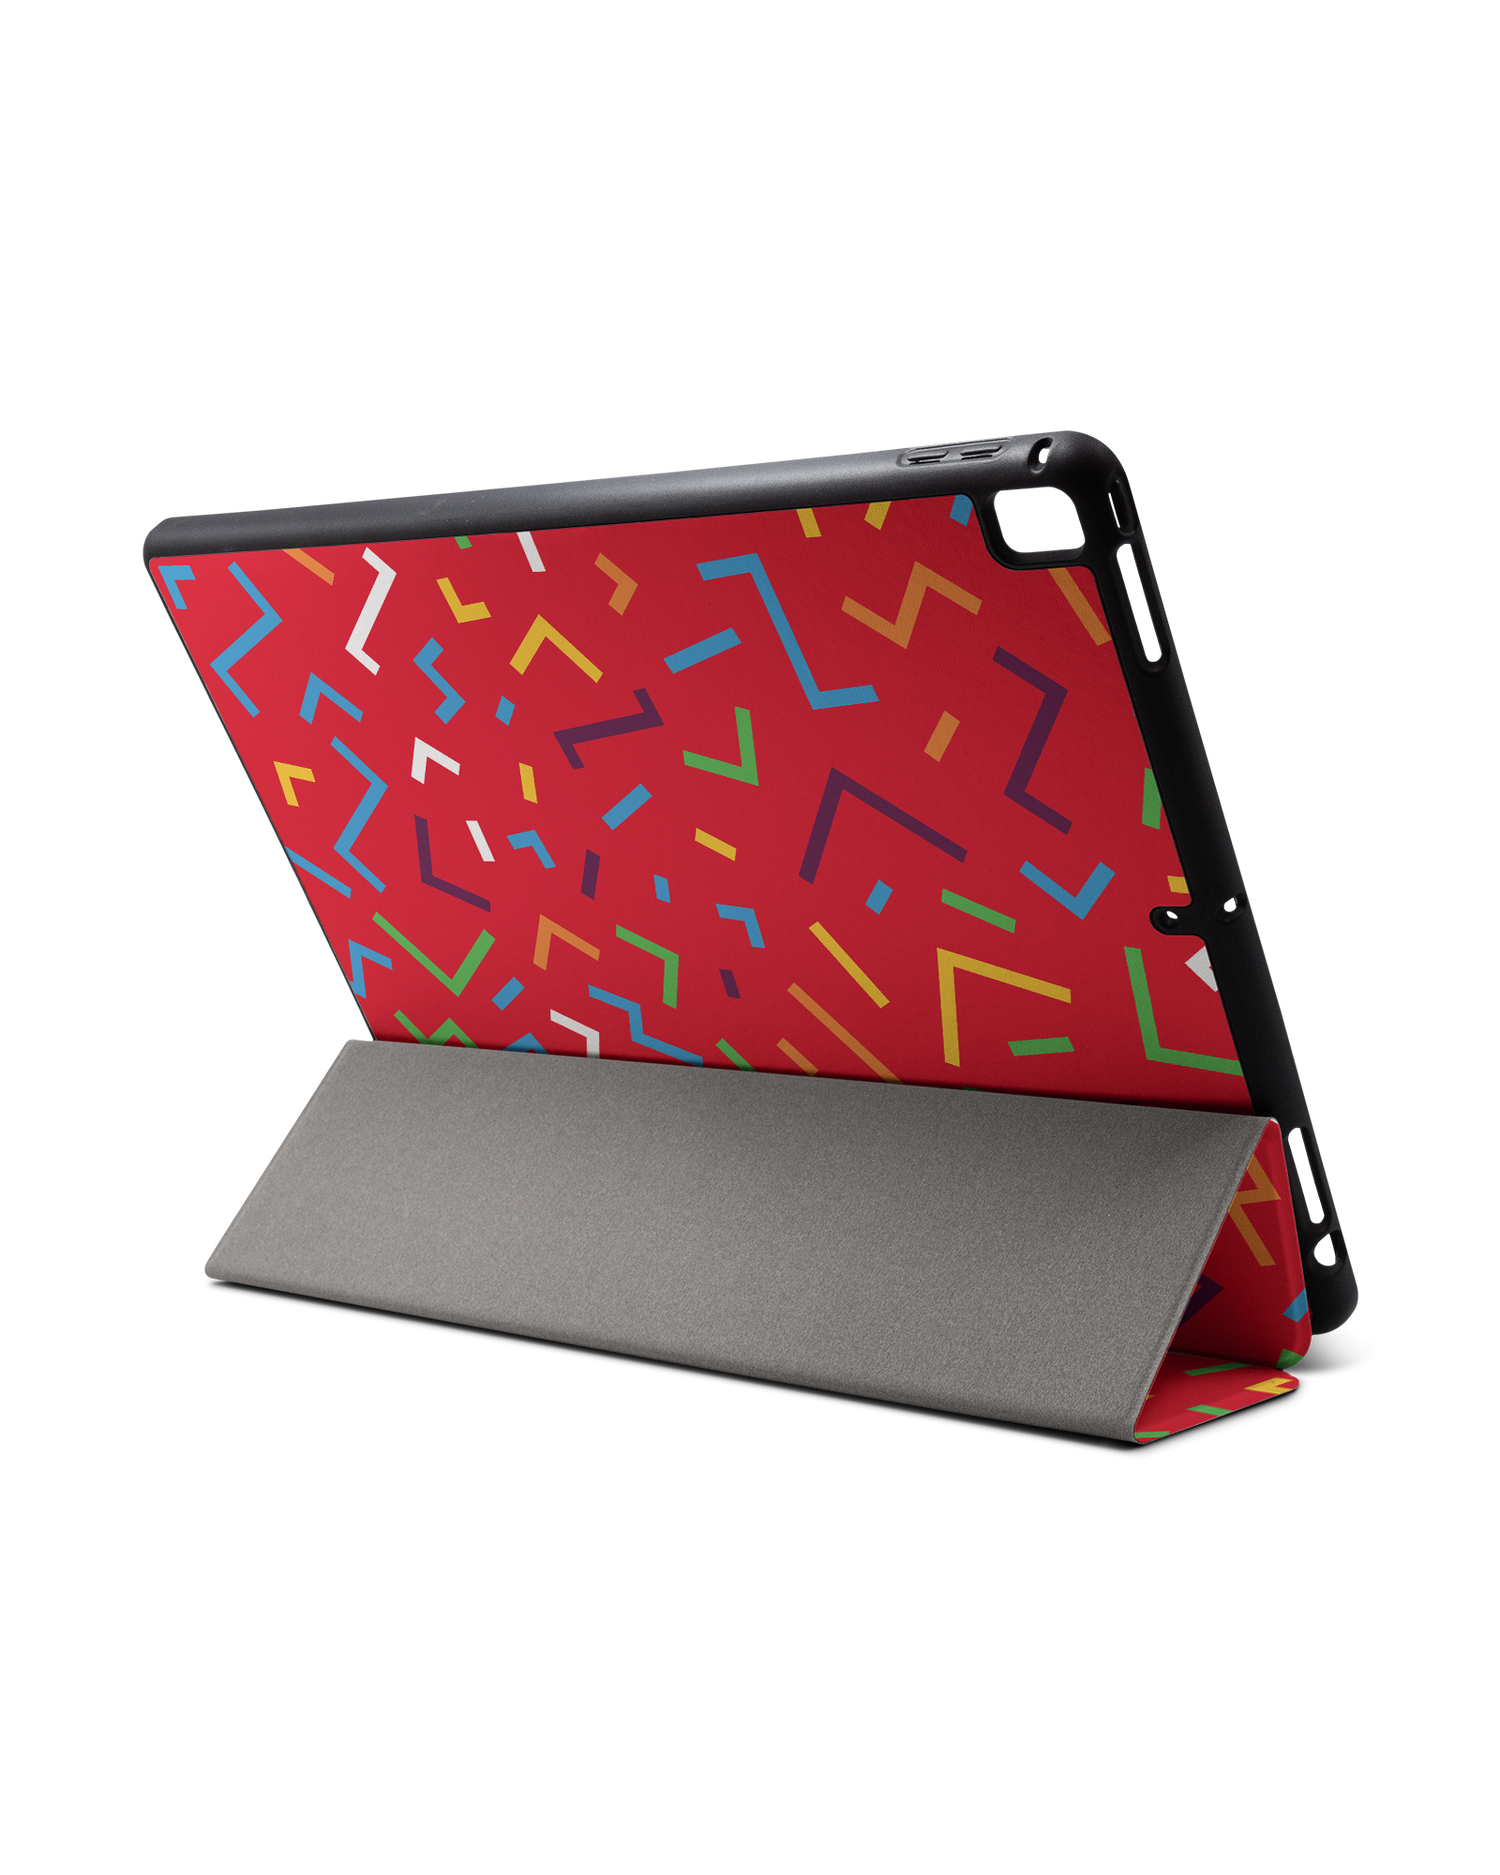 Pringles Confetti iPad Hülle mit Stifthalter für Apple iPad Pro 2 12.9'' (2017): Aufgestellt im Querformat von hinten